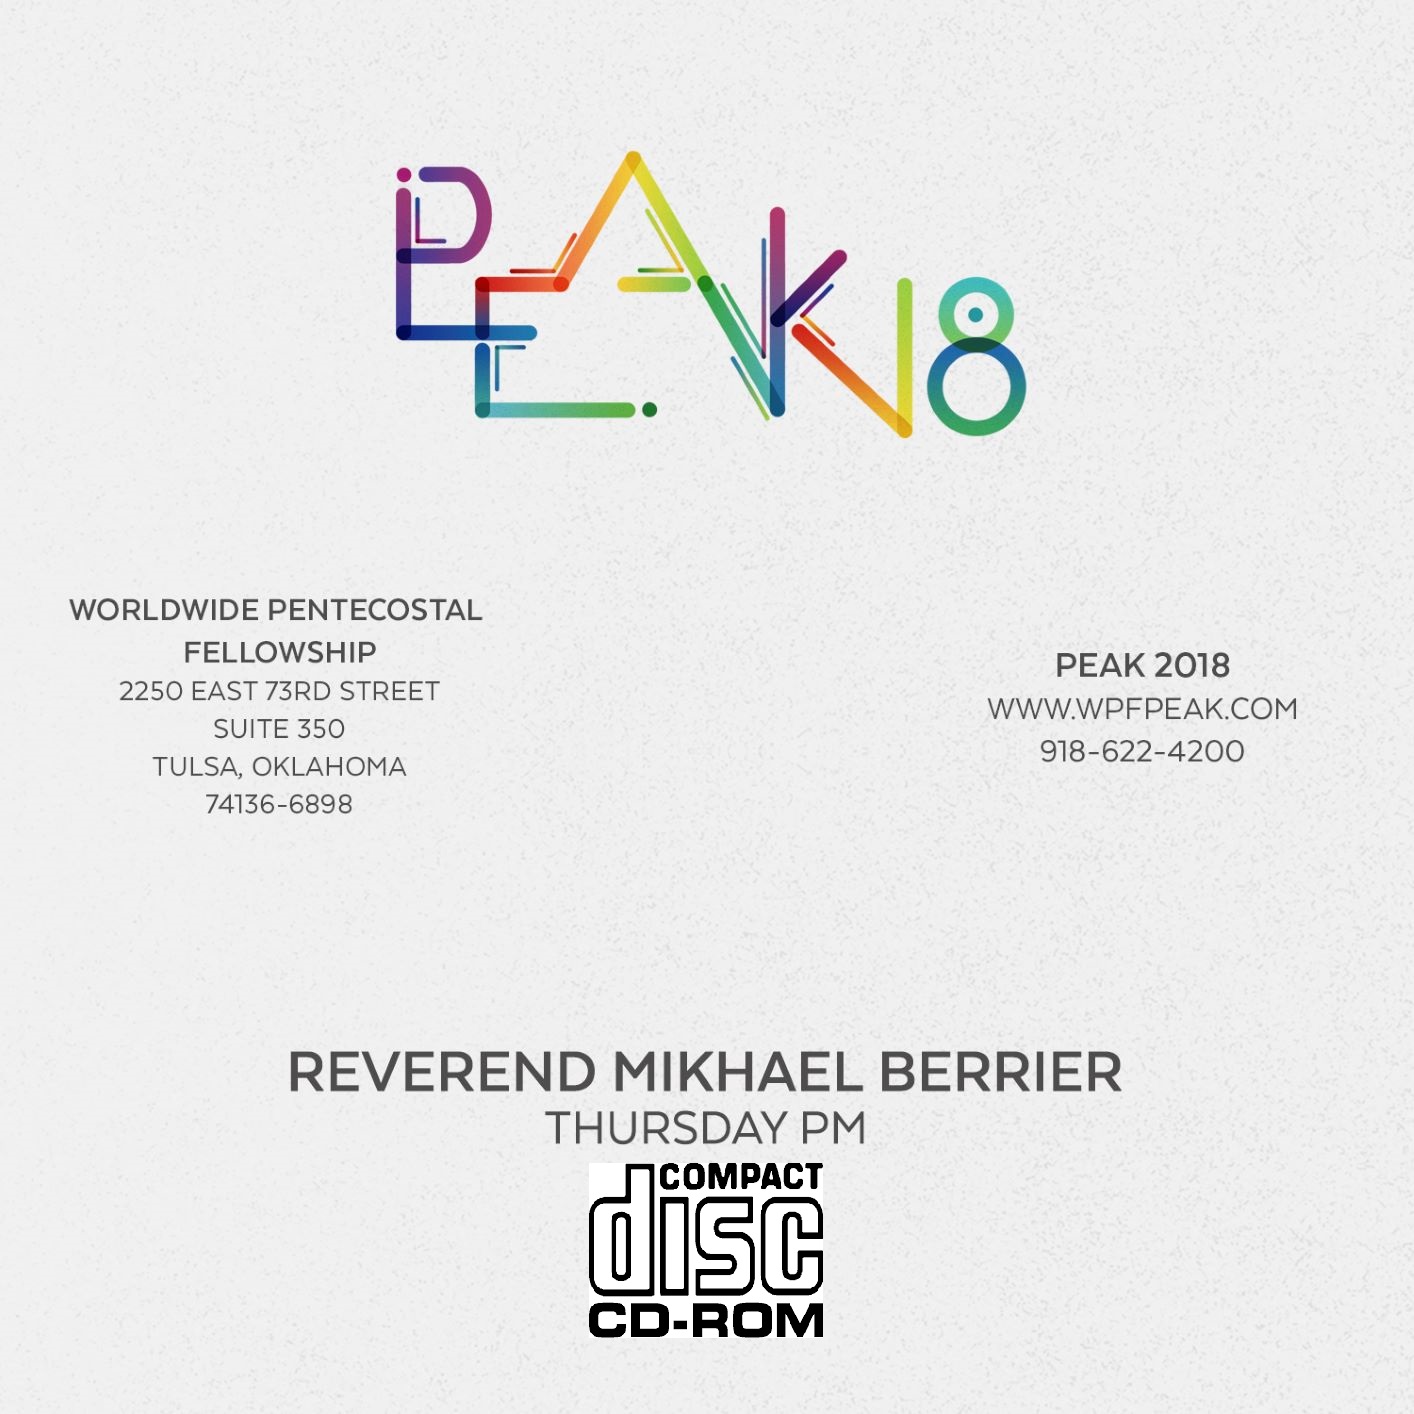 2018 PEAK Rev. Mikhael Berrier (CD)